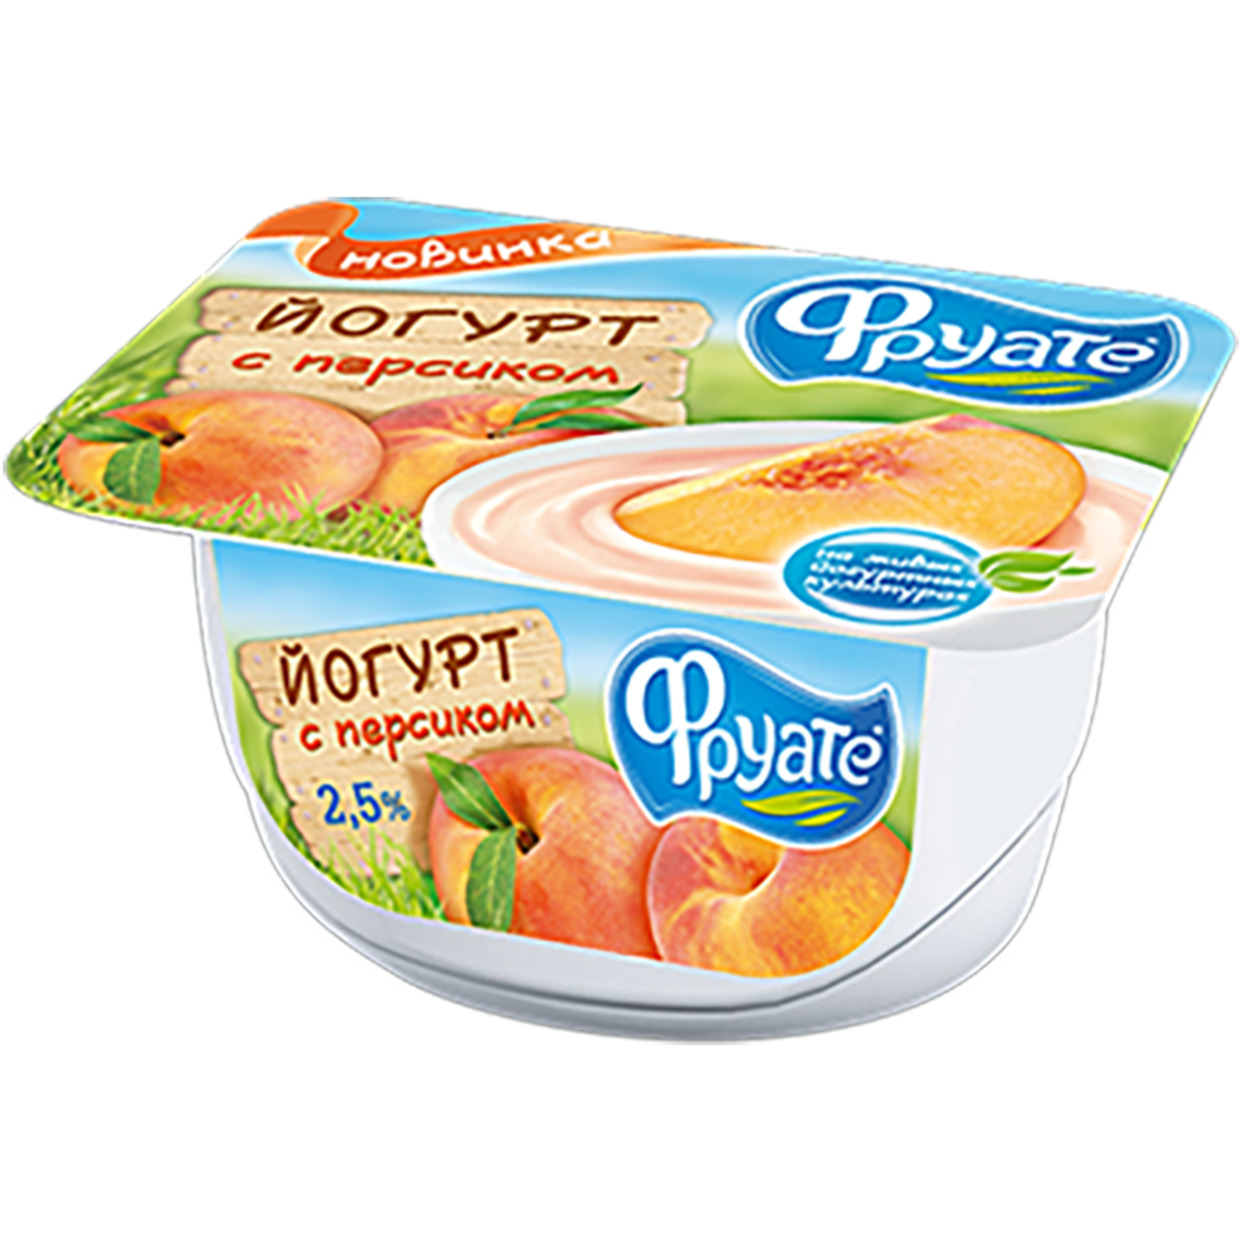 Йогурт Фруате с персиком 2,5% 125г